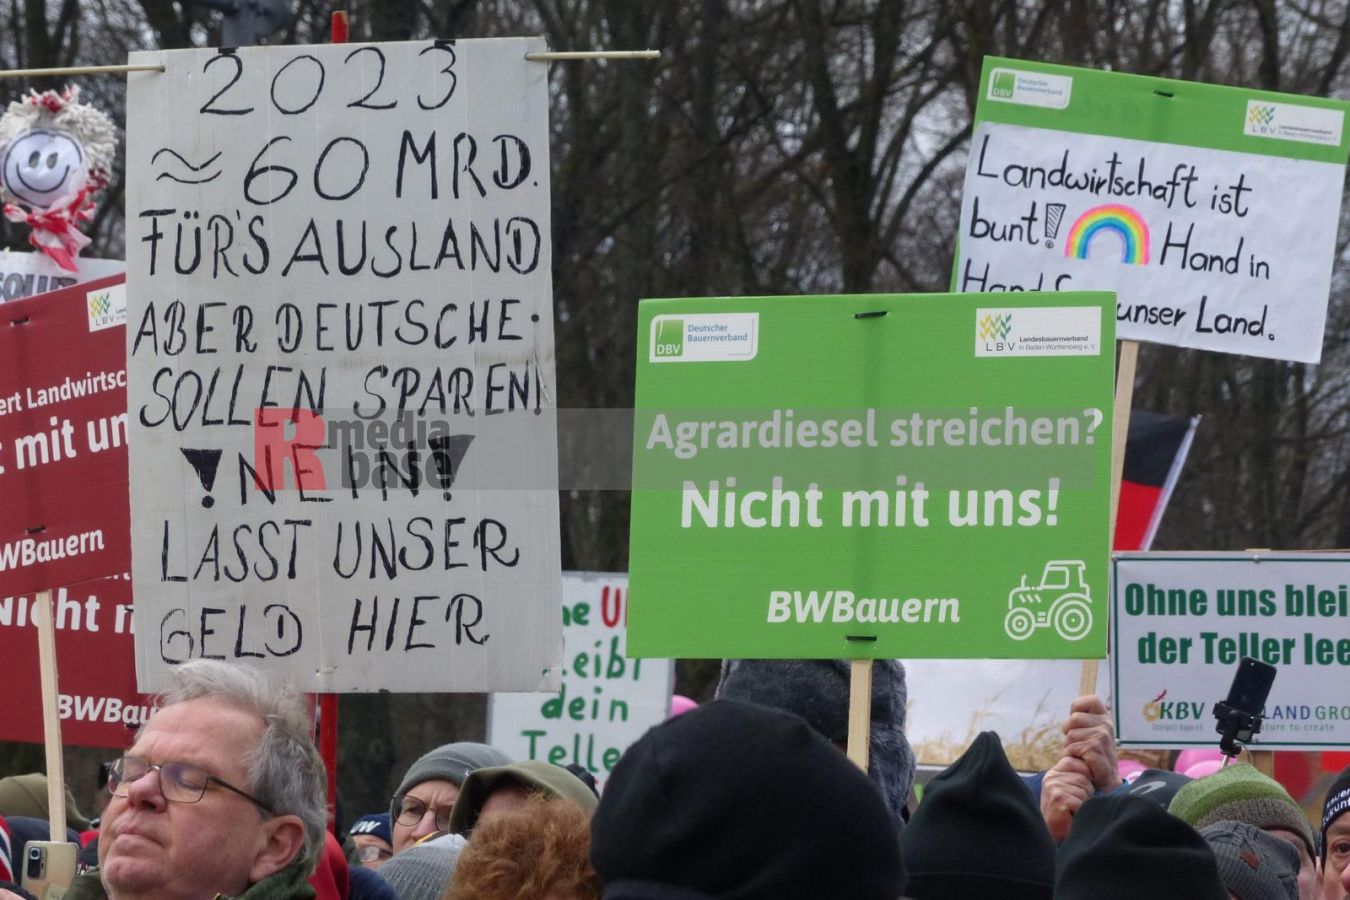 Bauernprotest in Berlin <i>Bild Denner/R-mediabase</i> <br><a href=/confor2/?bld=79031&pst=78995&aid=86&i1=Denner/R-mediabase>Download Bild 79031</a>  <br><a href=/?p=78995>Zum Beitrag 78995</a>